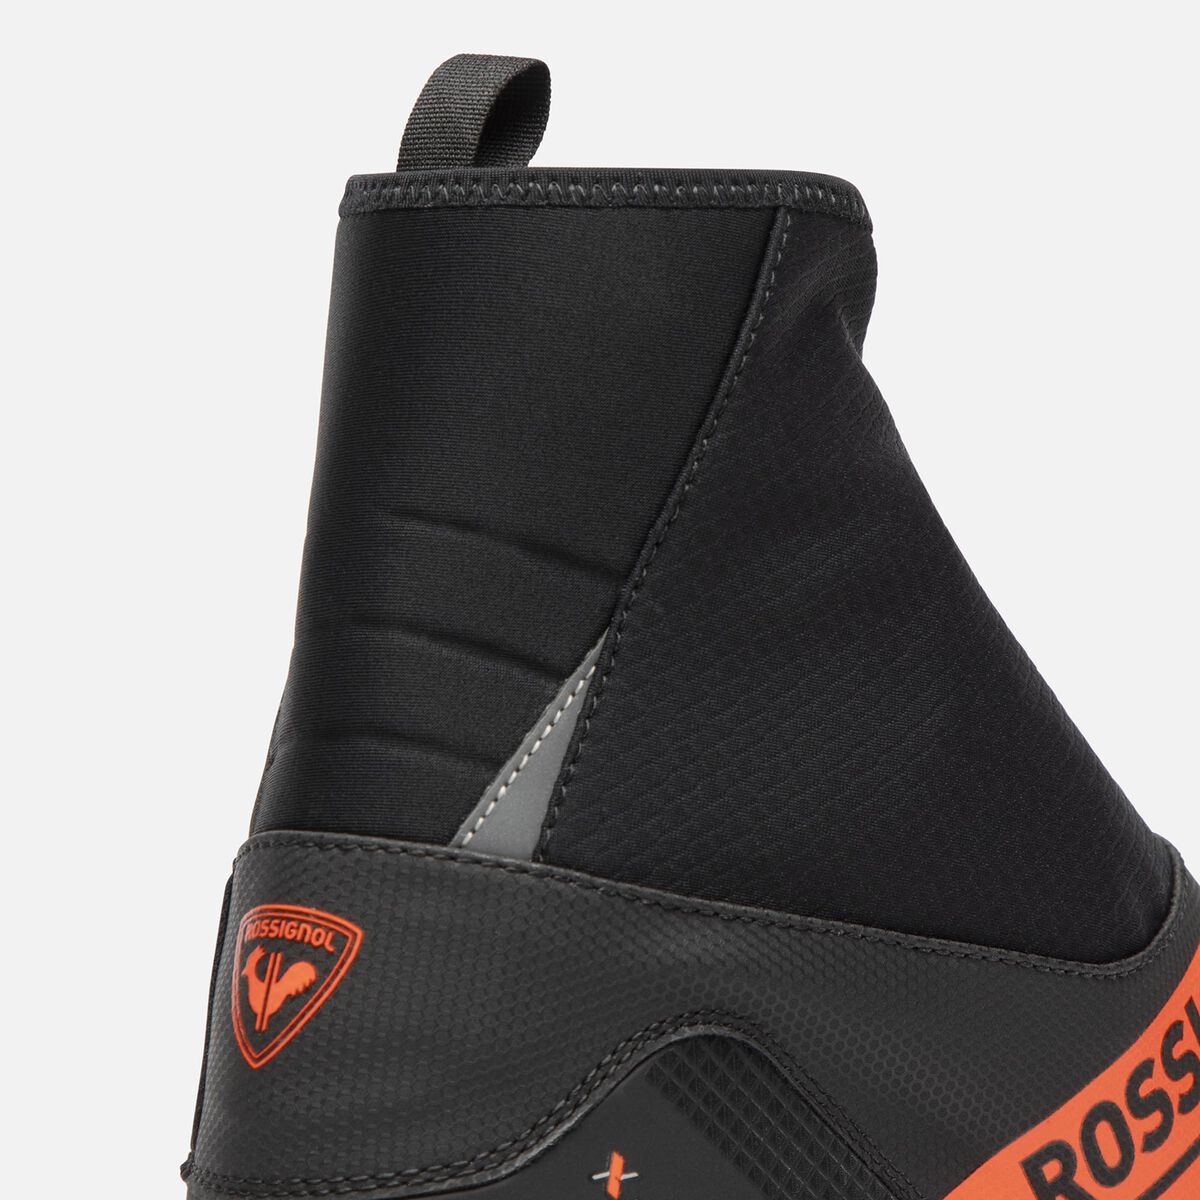 Rossignol Unisex Race Classic Nordic Boots X-10 multicolor